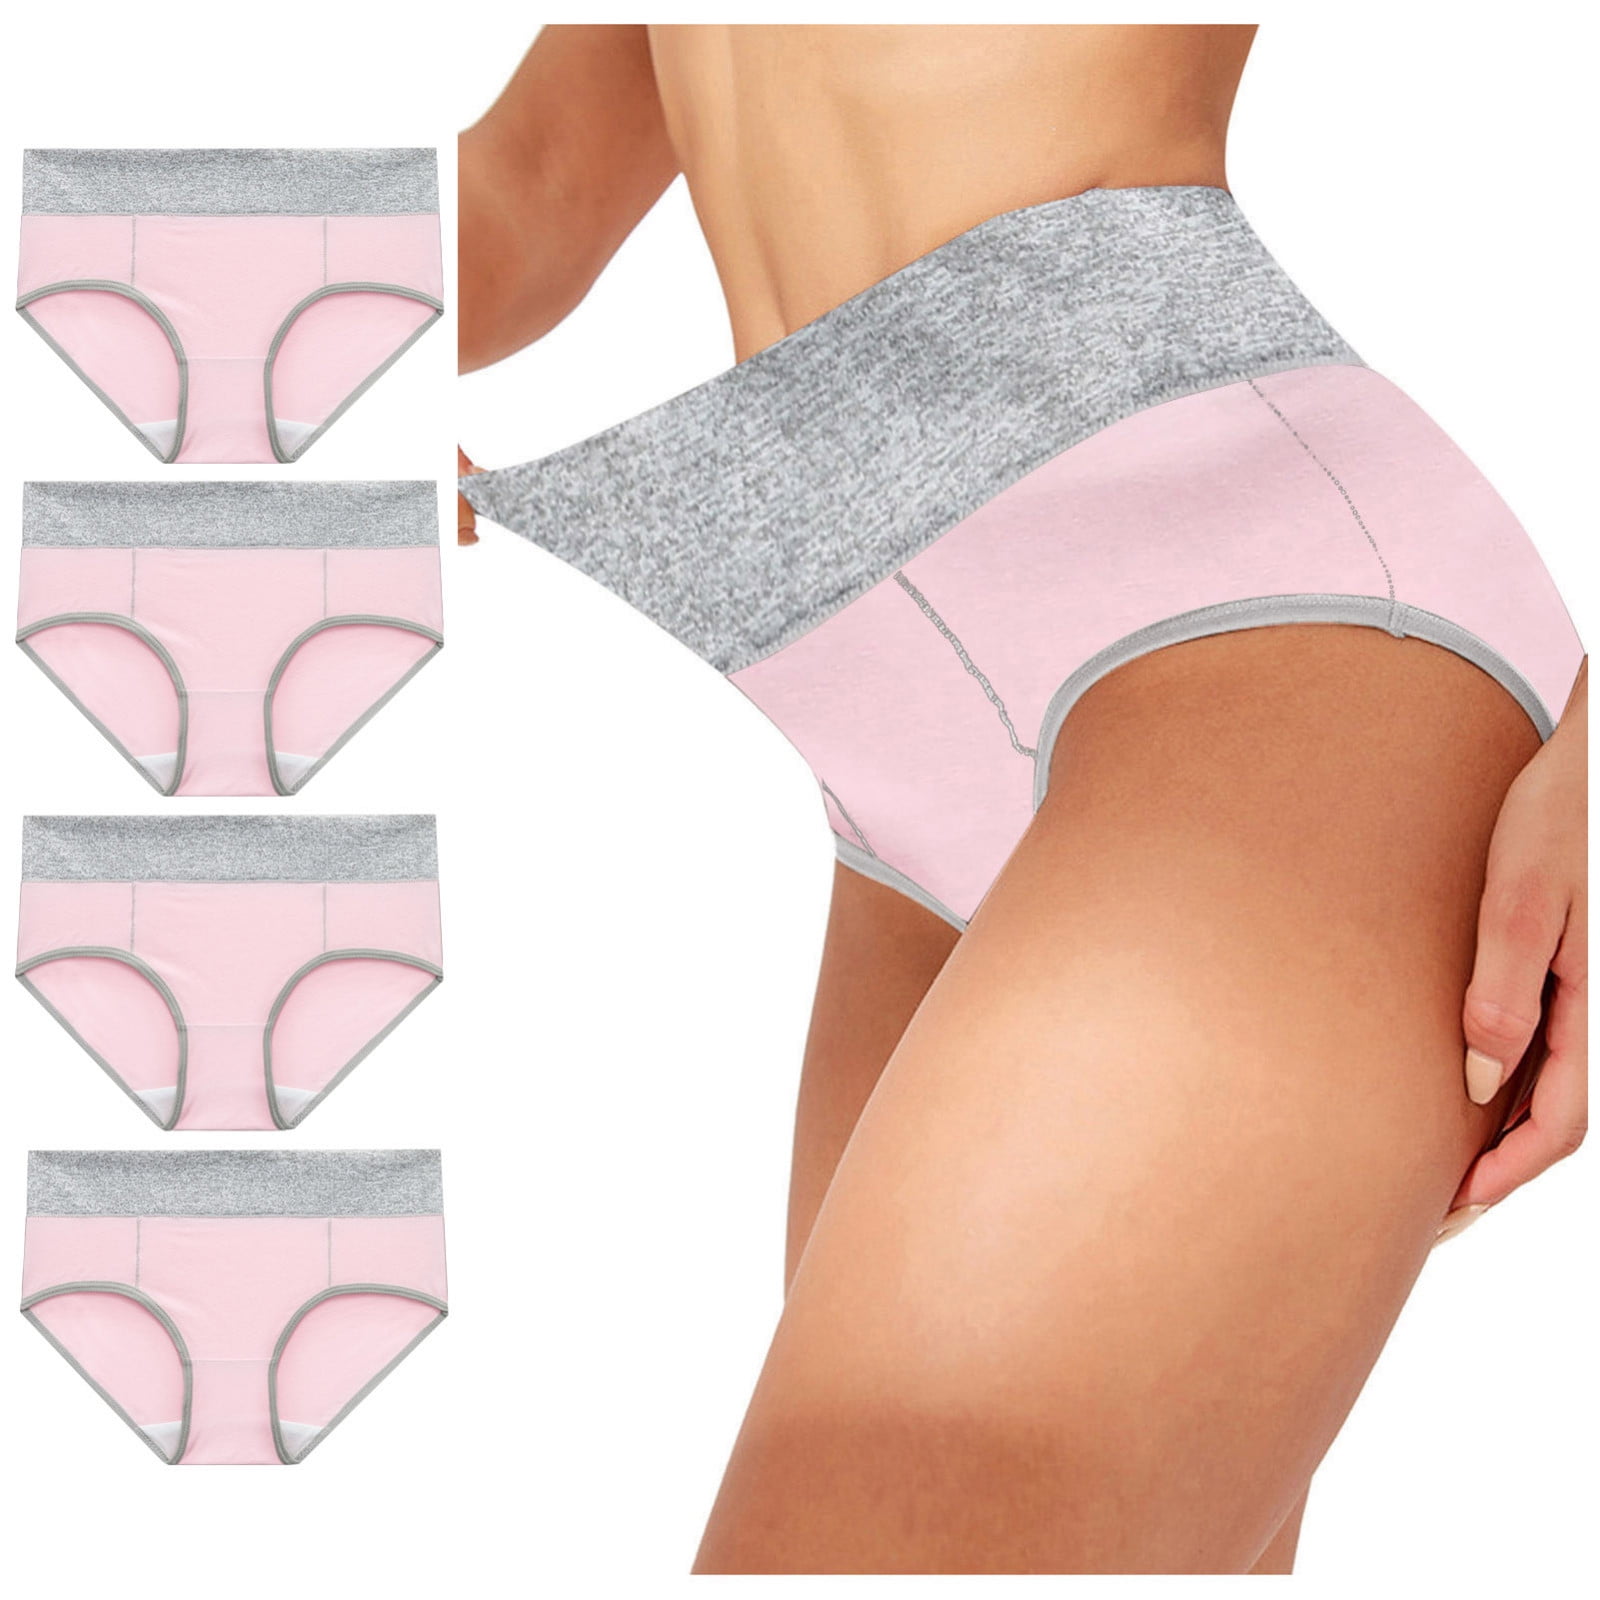 HUPOM 4PCS Bladder Control Underwear For Women Girls Panties High